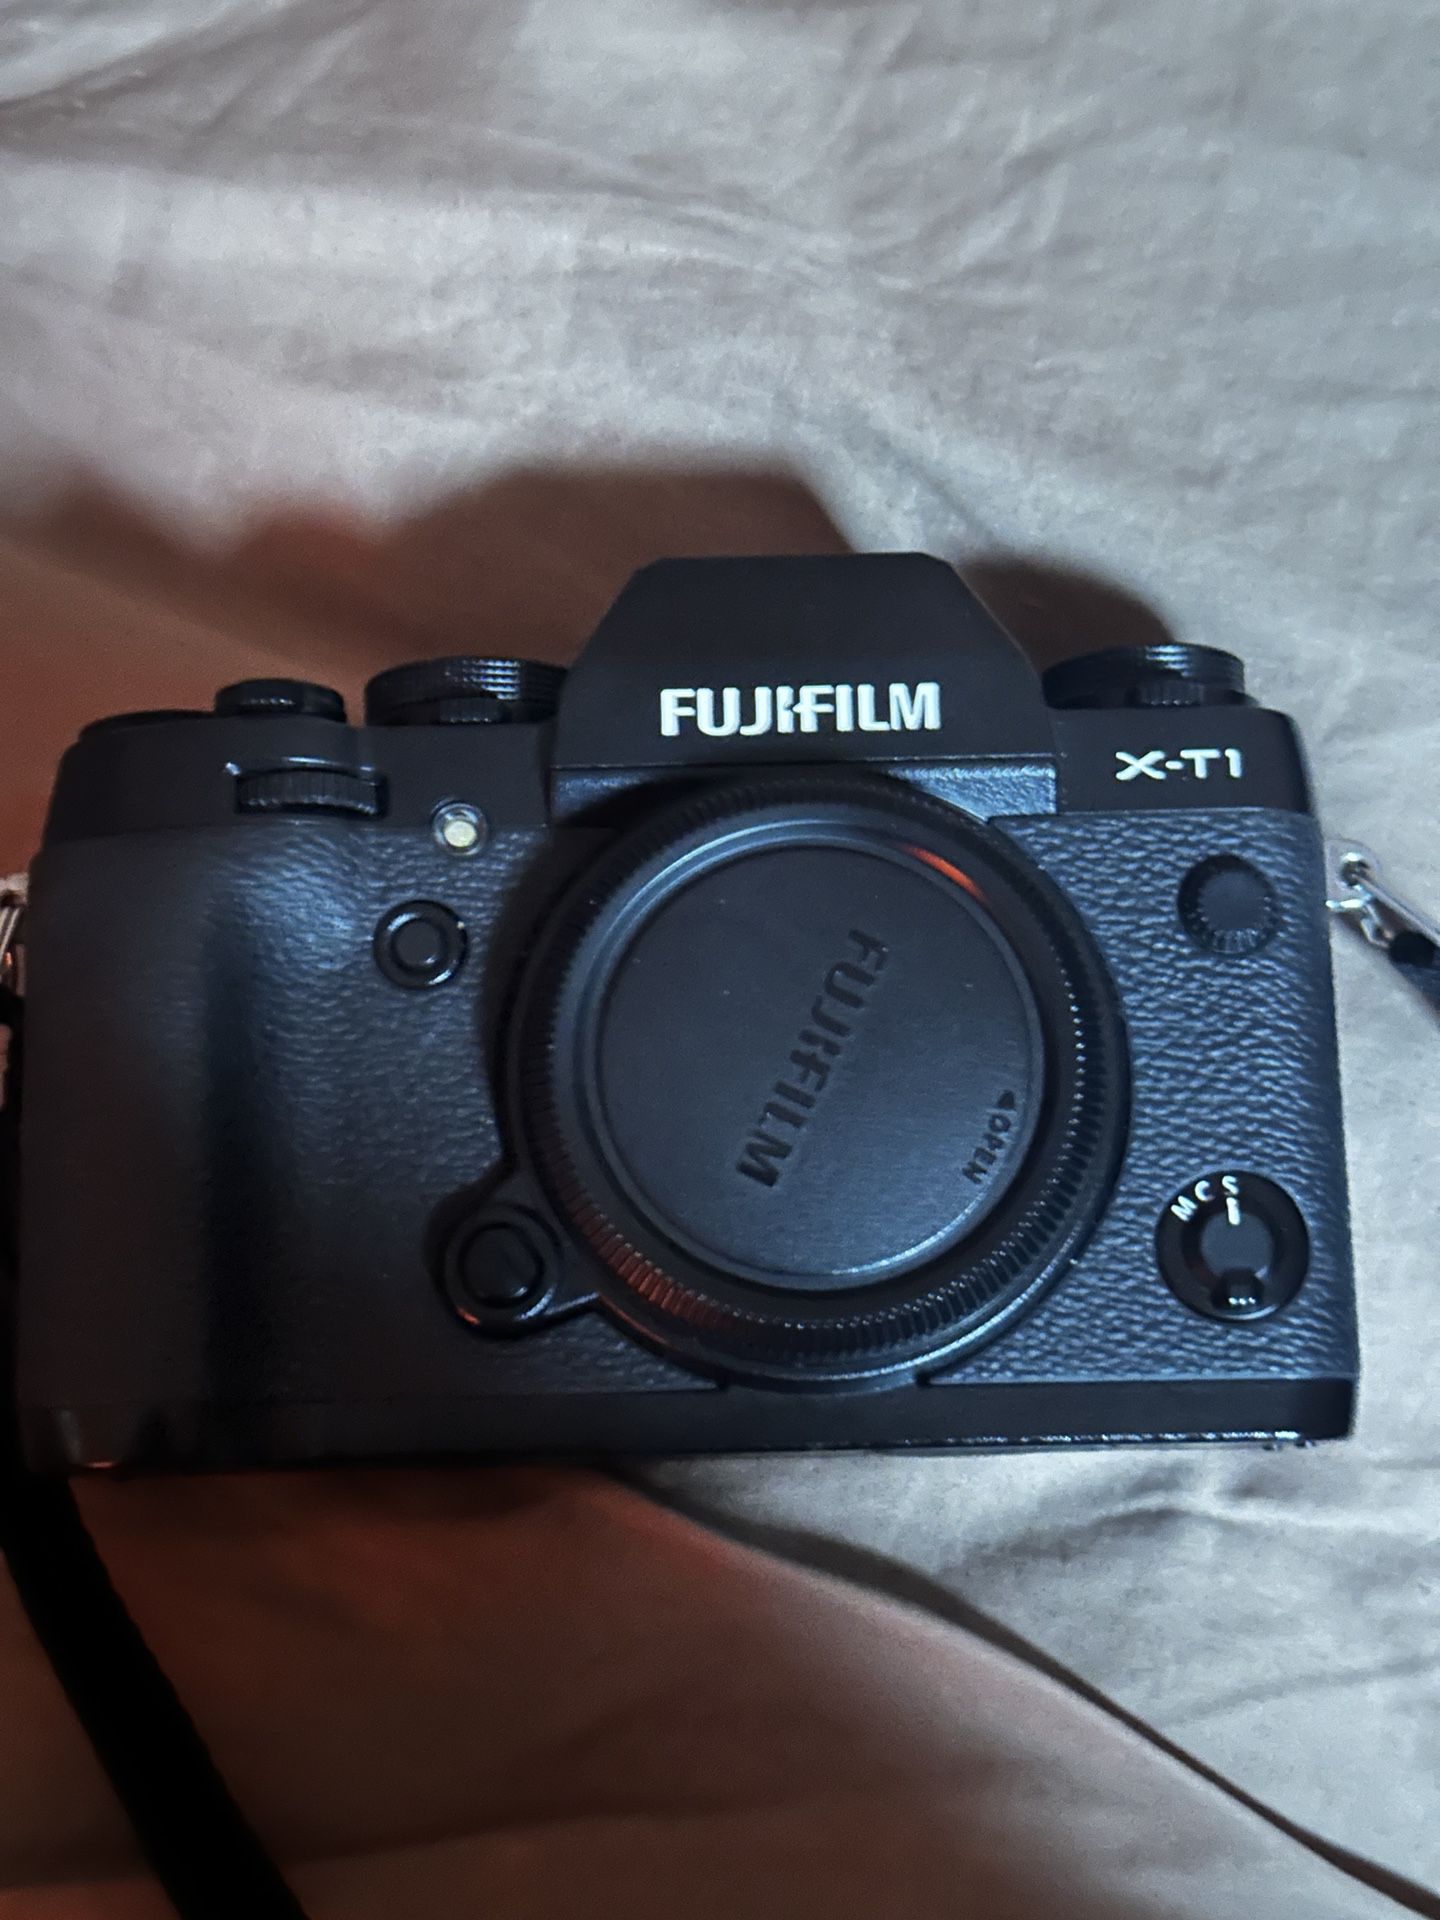 Fuji Film XT-1 